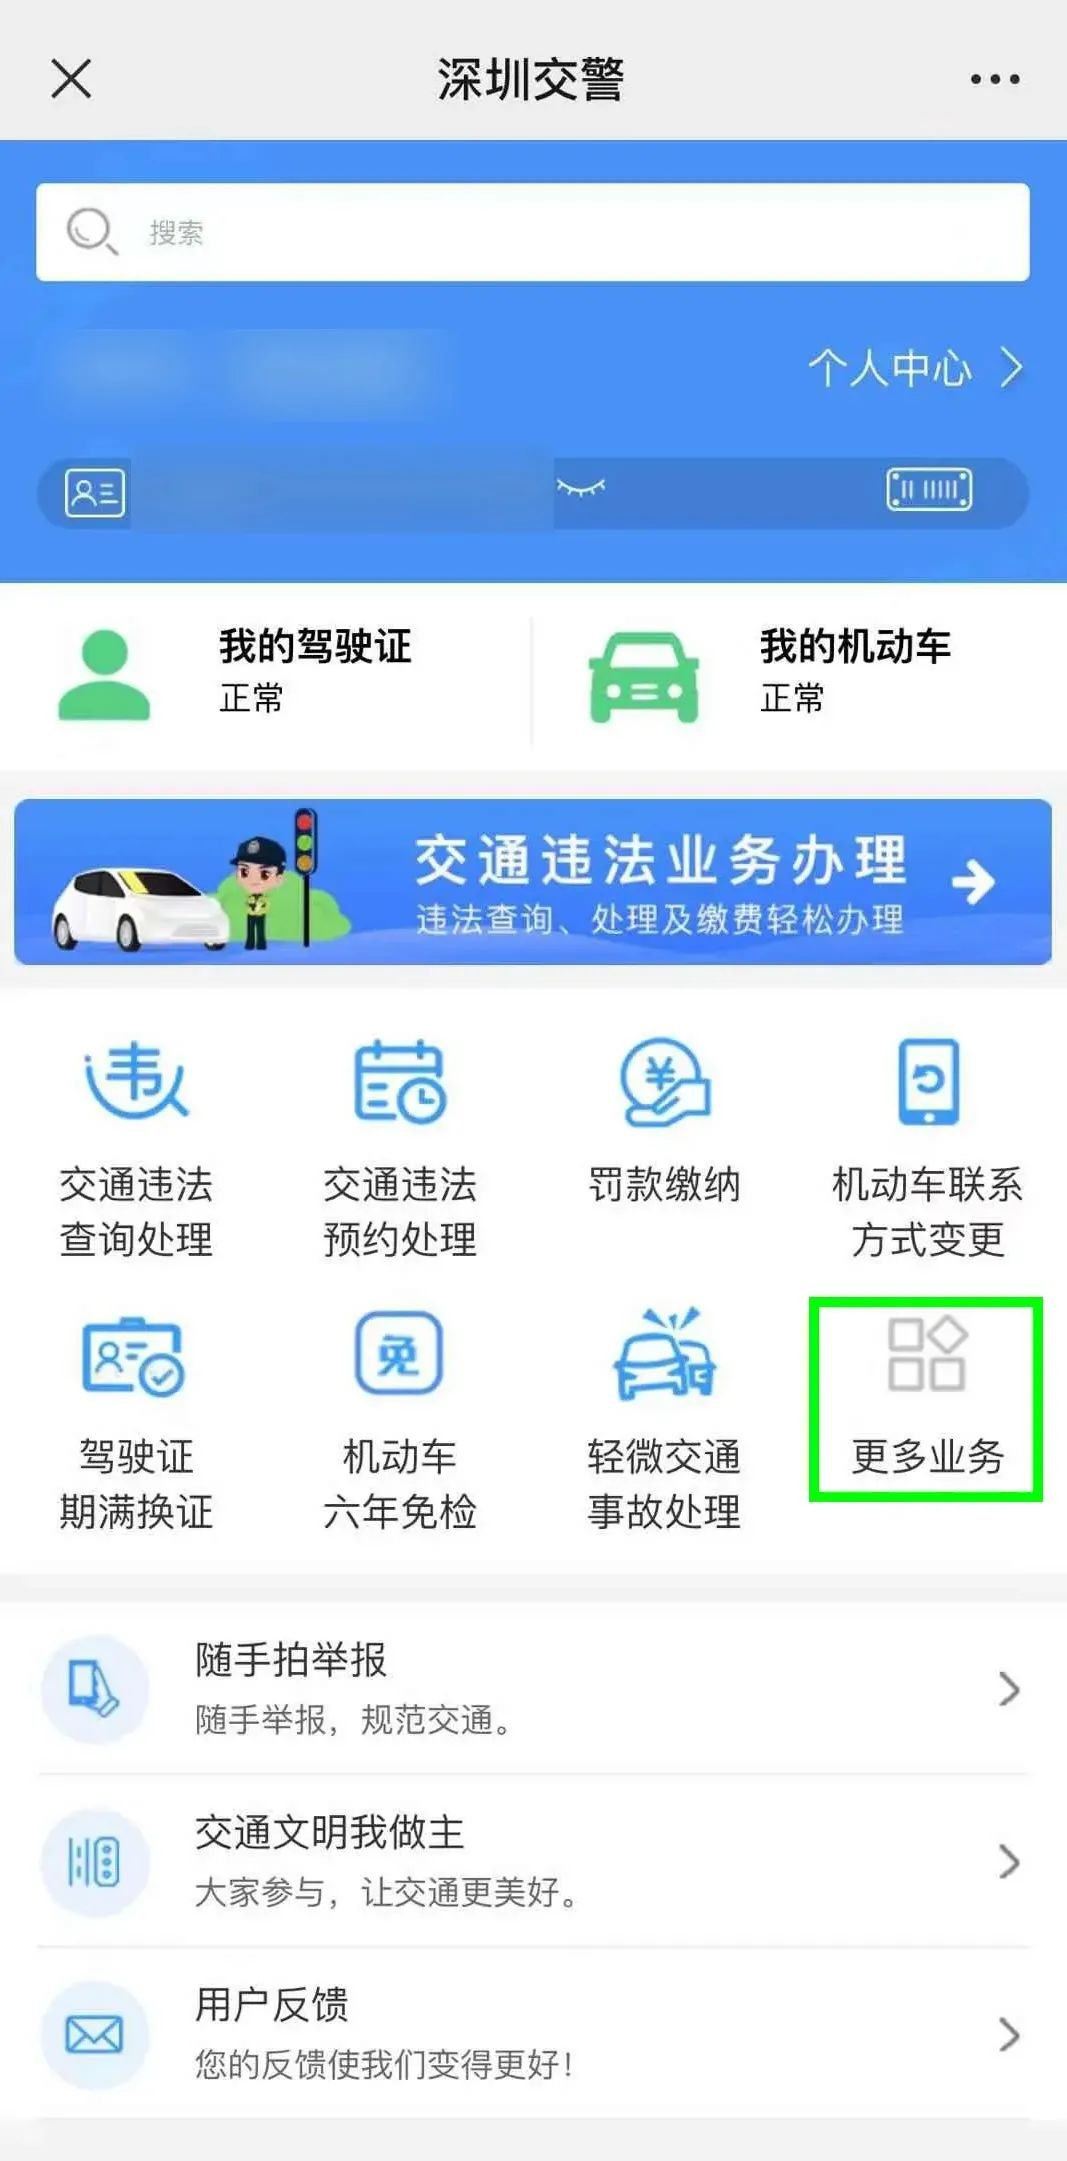 深圳乘车优惠政策 深圳星级用户1分钱便民乘车活动